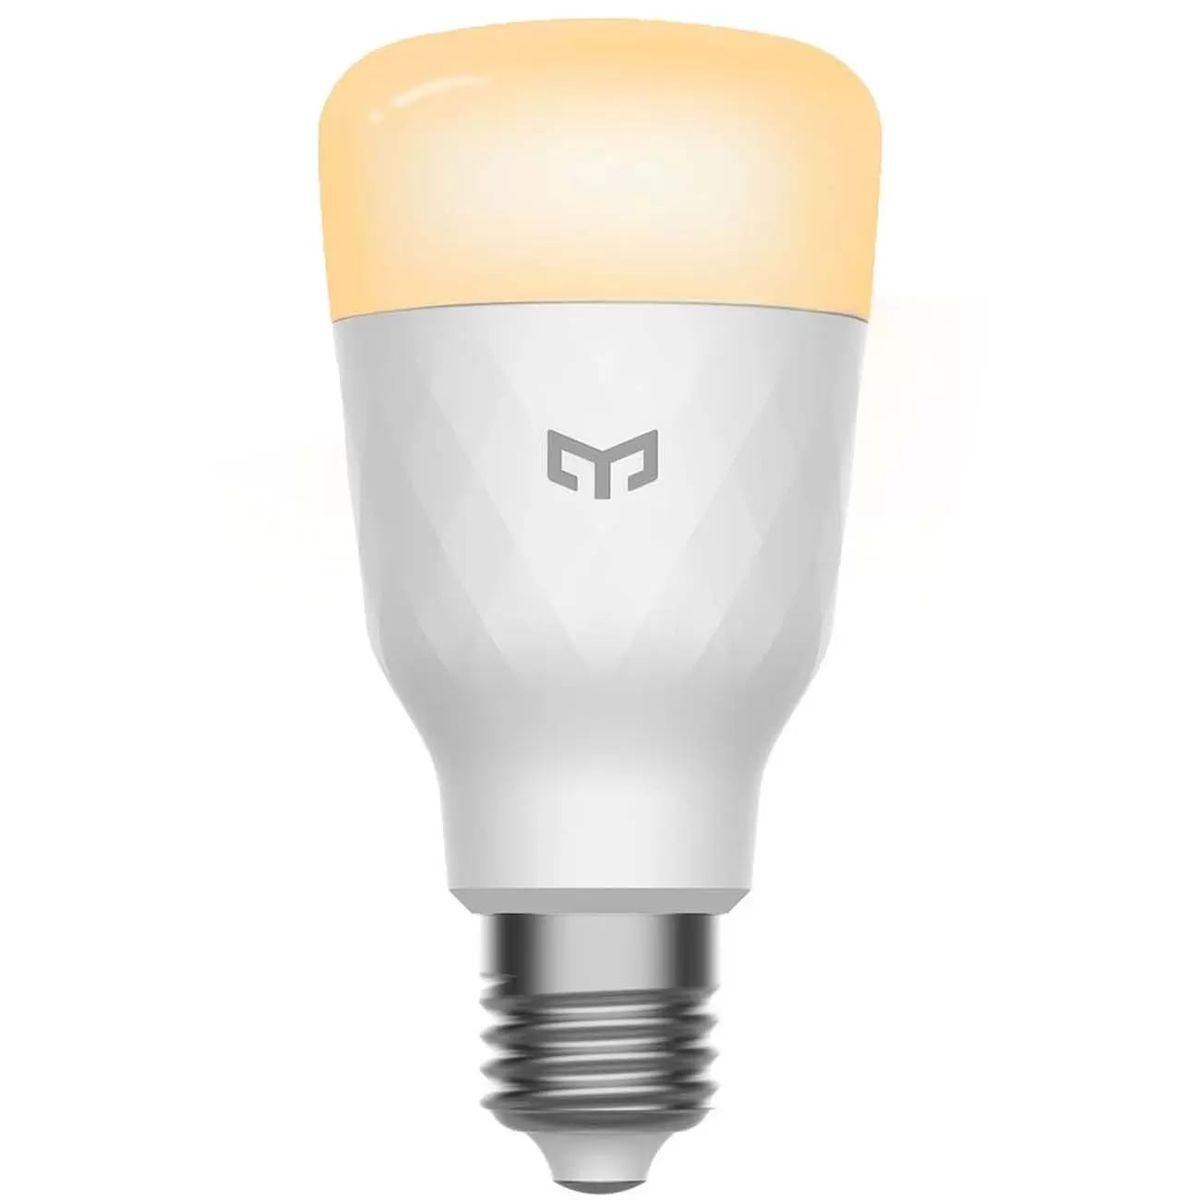 Лампа светодиодная диммируемая Yeelight E27 8W 2700K белая YLDP007 